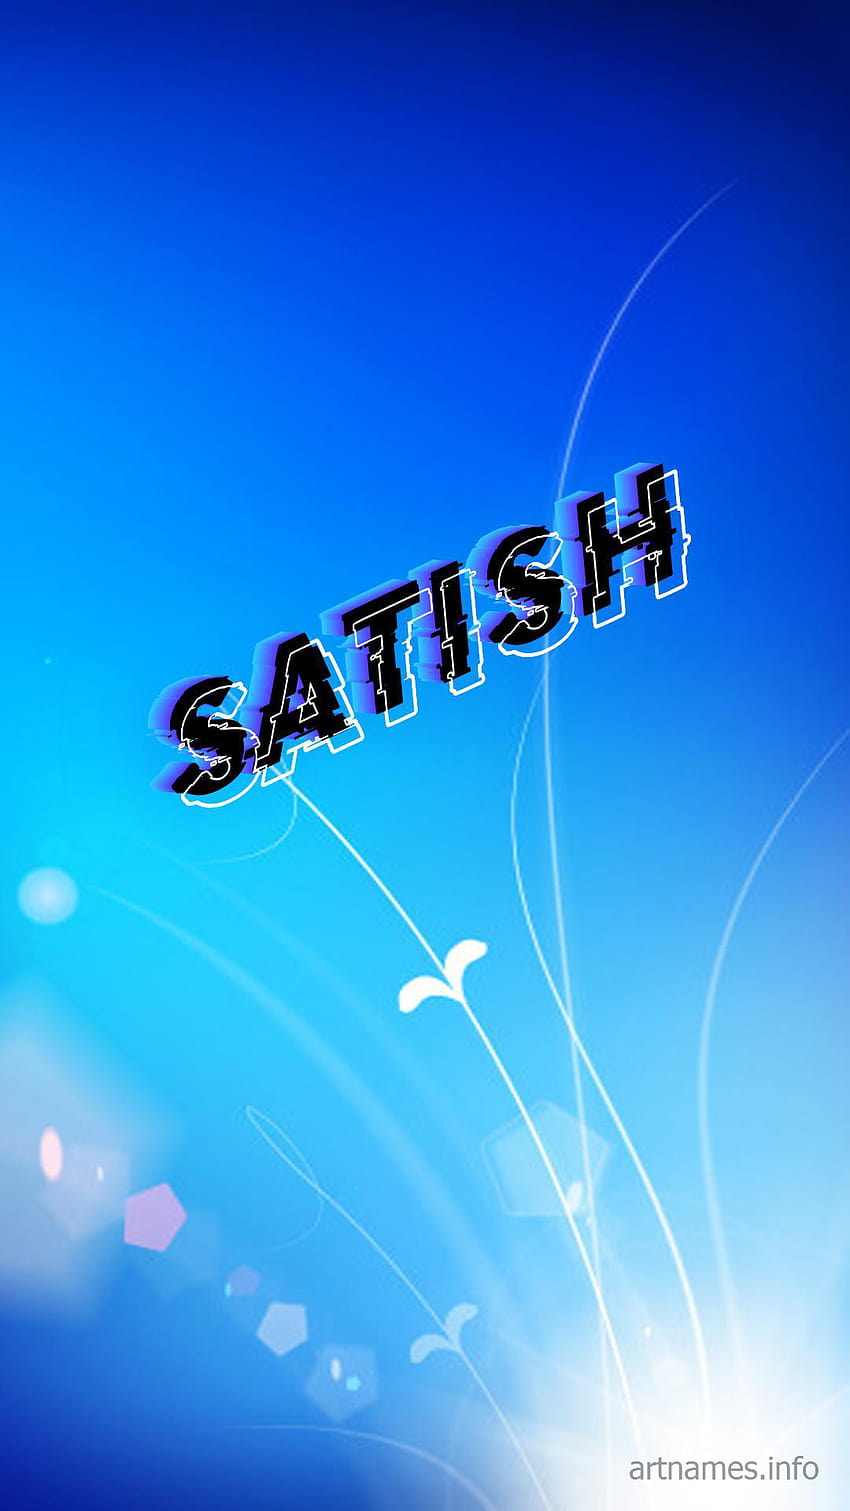 satish logo wallpaper